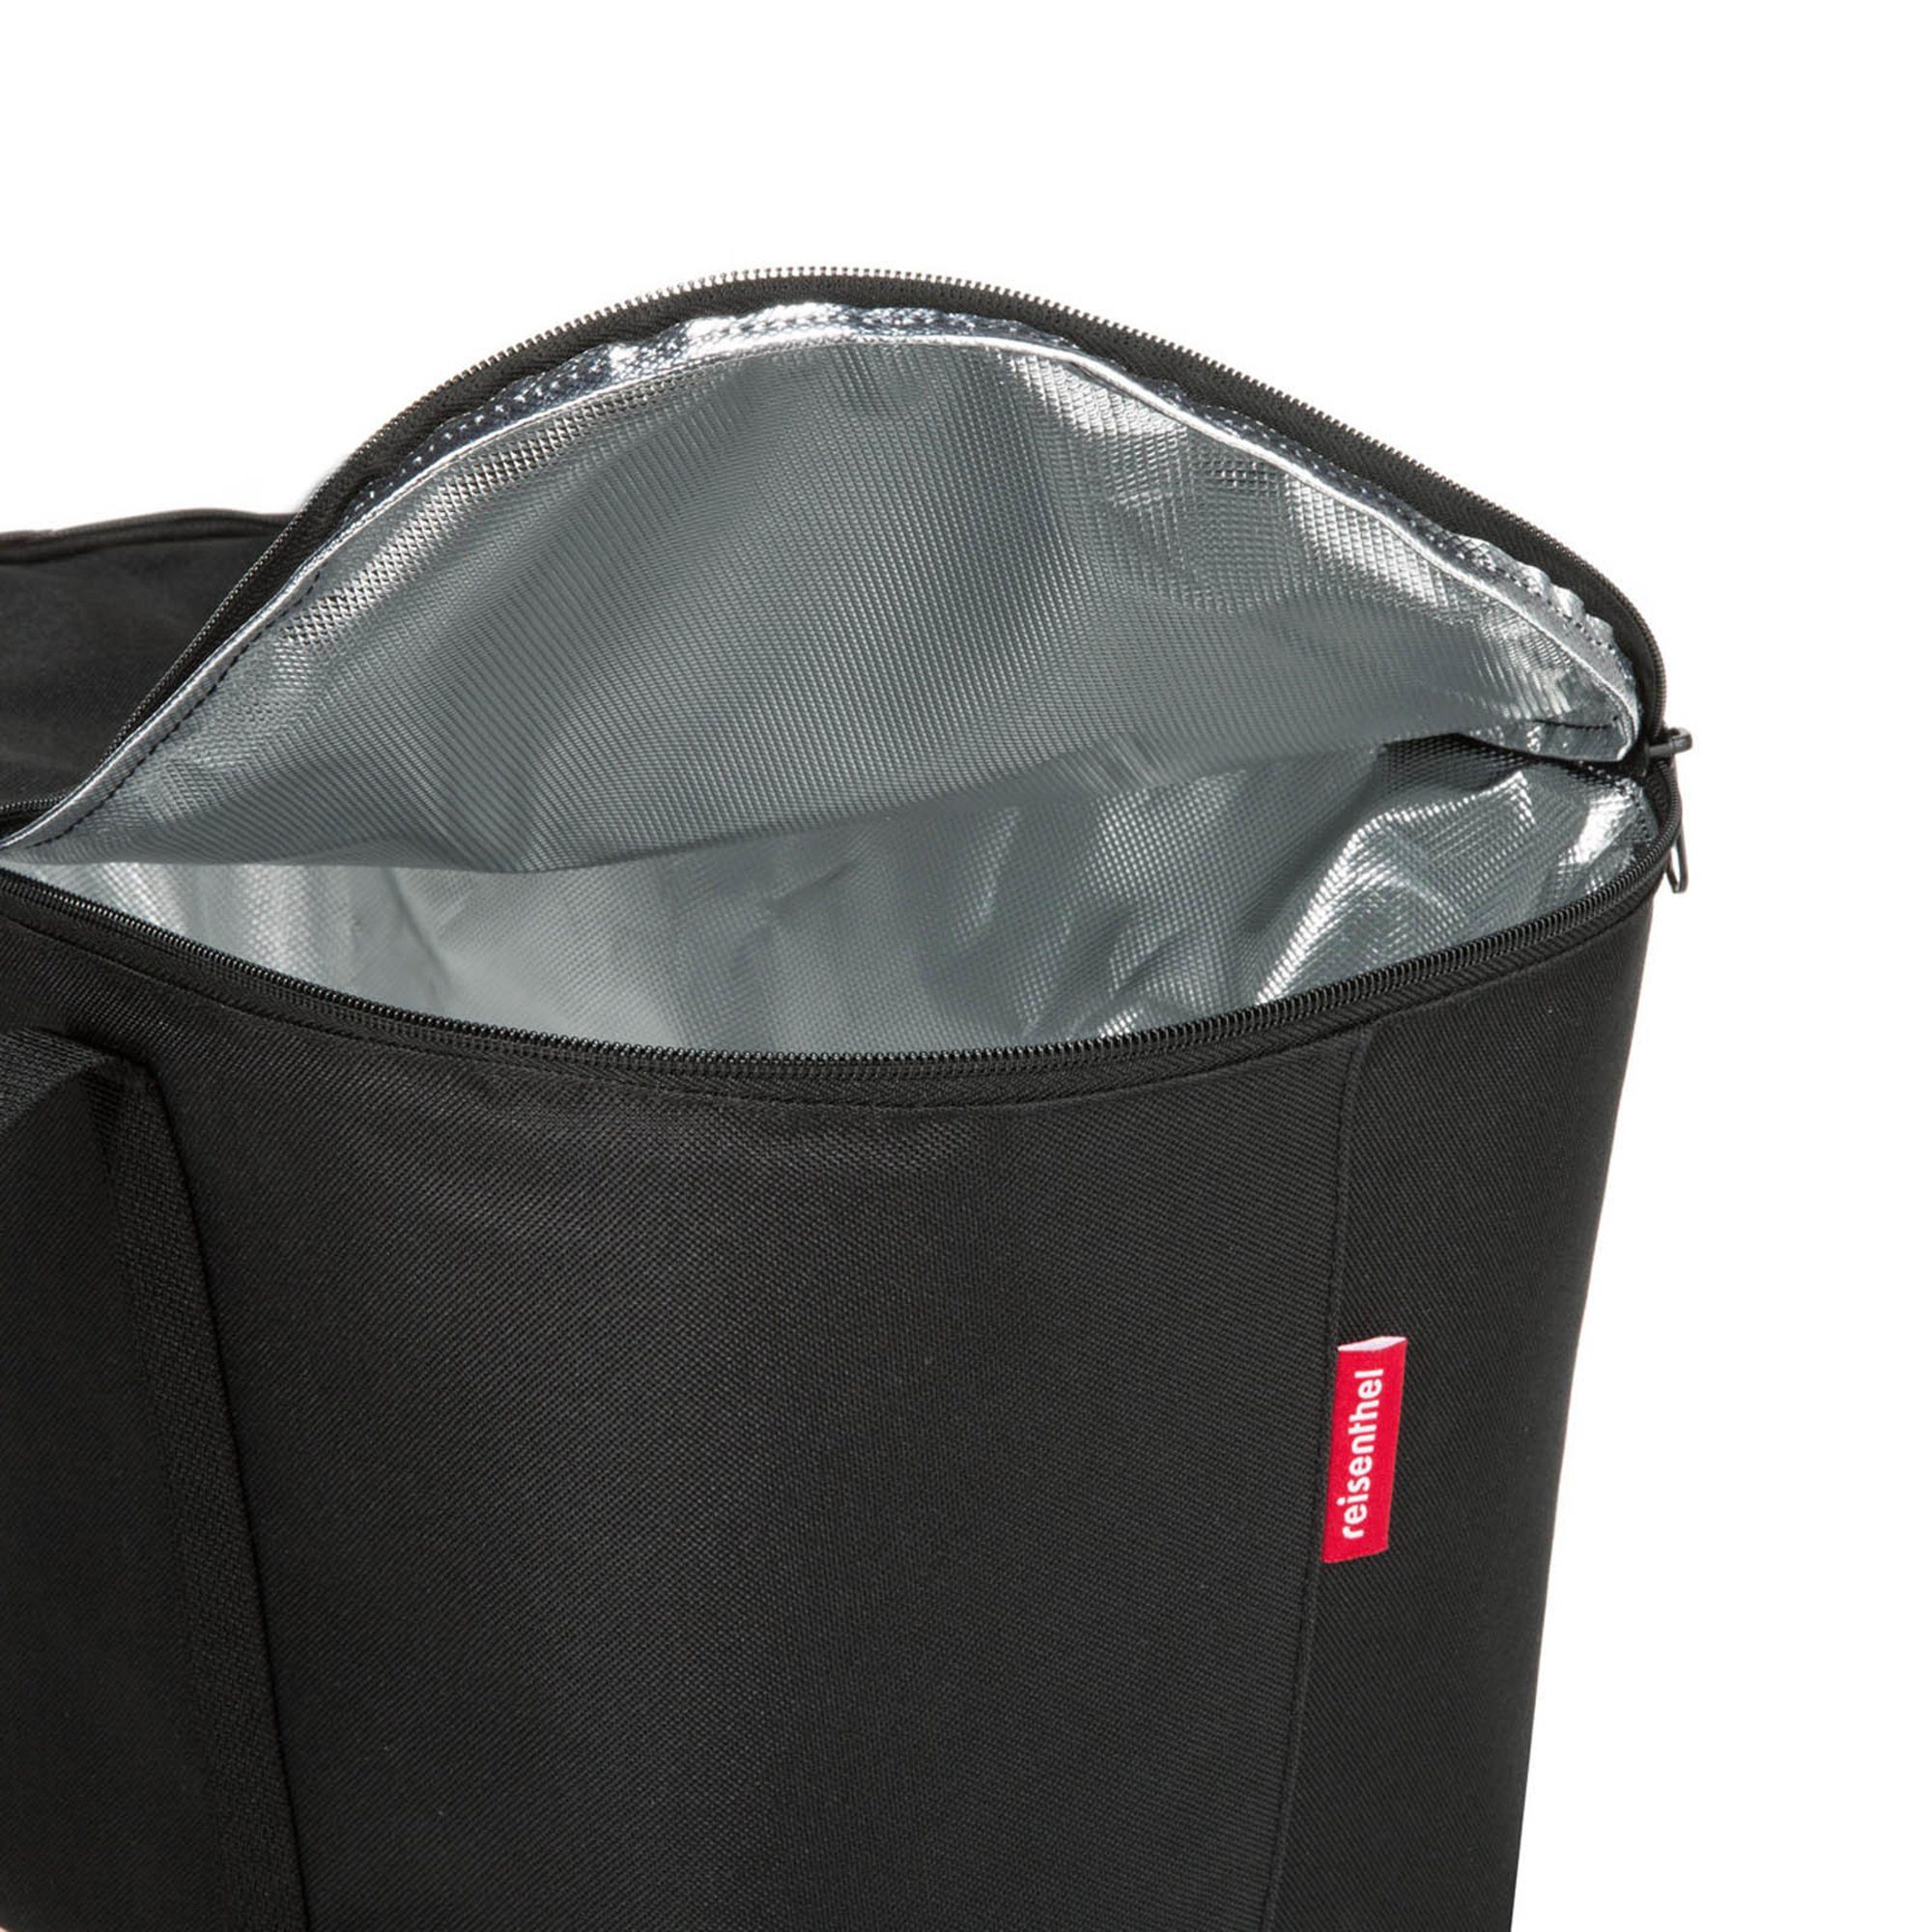 Kühltasche Aufbewahrungstasche coolerbag, REISENTHEL® black Kühltasche